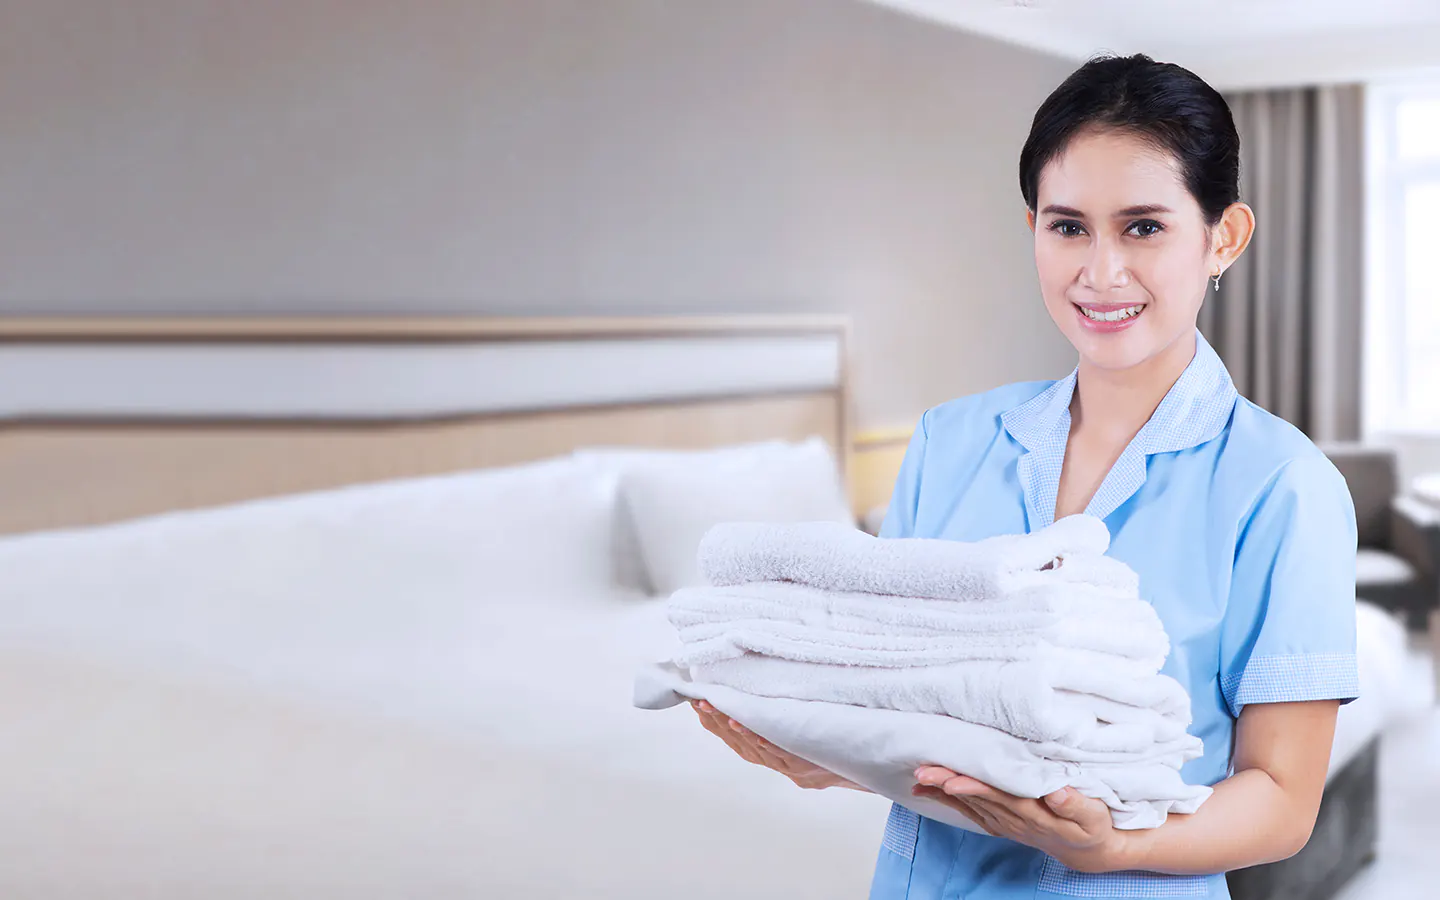 Aspectos laborales relevantes para empleados domésticos